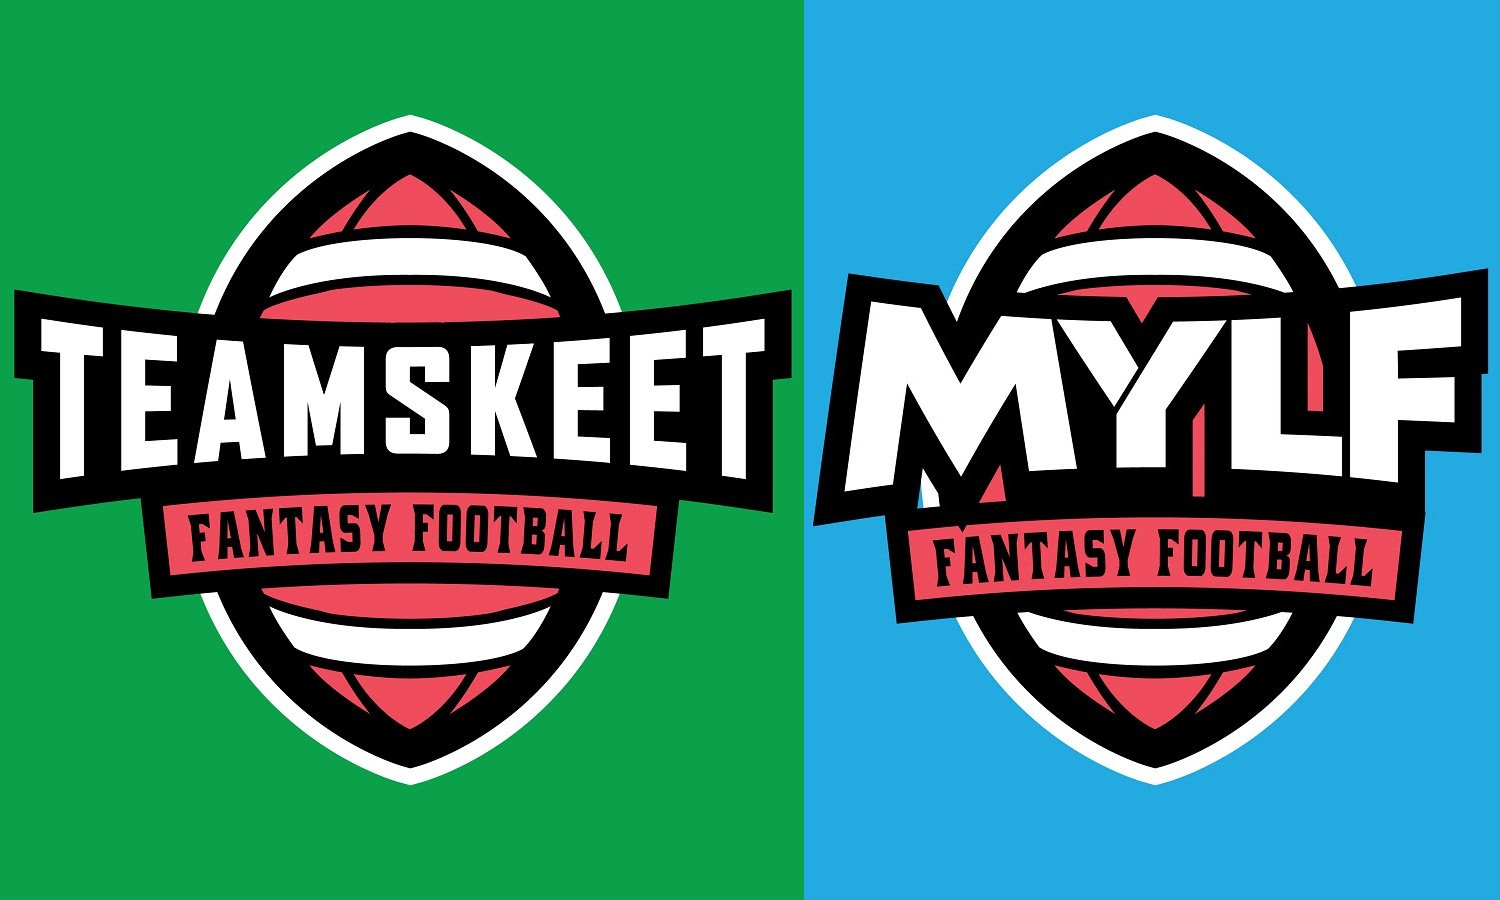 Avn Media Network On Twitter Team Skeet Mylf To Roll Out 8 Fantasy Football Themed Scenes